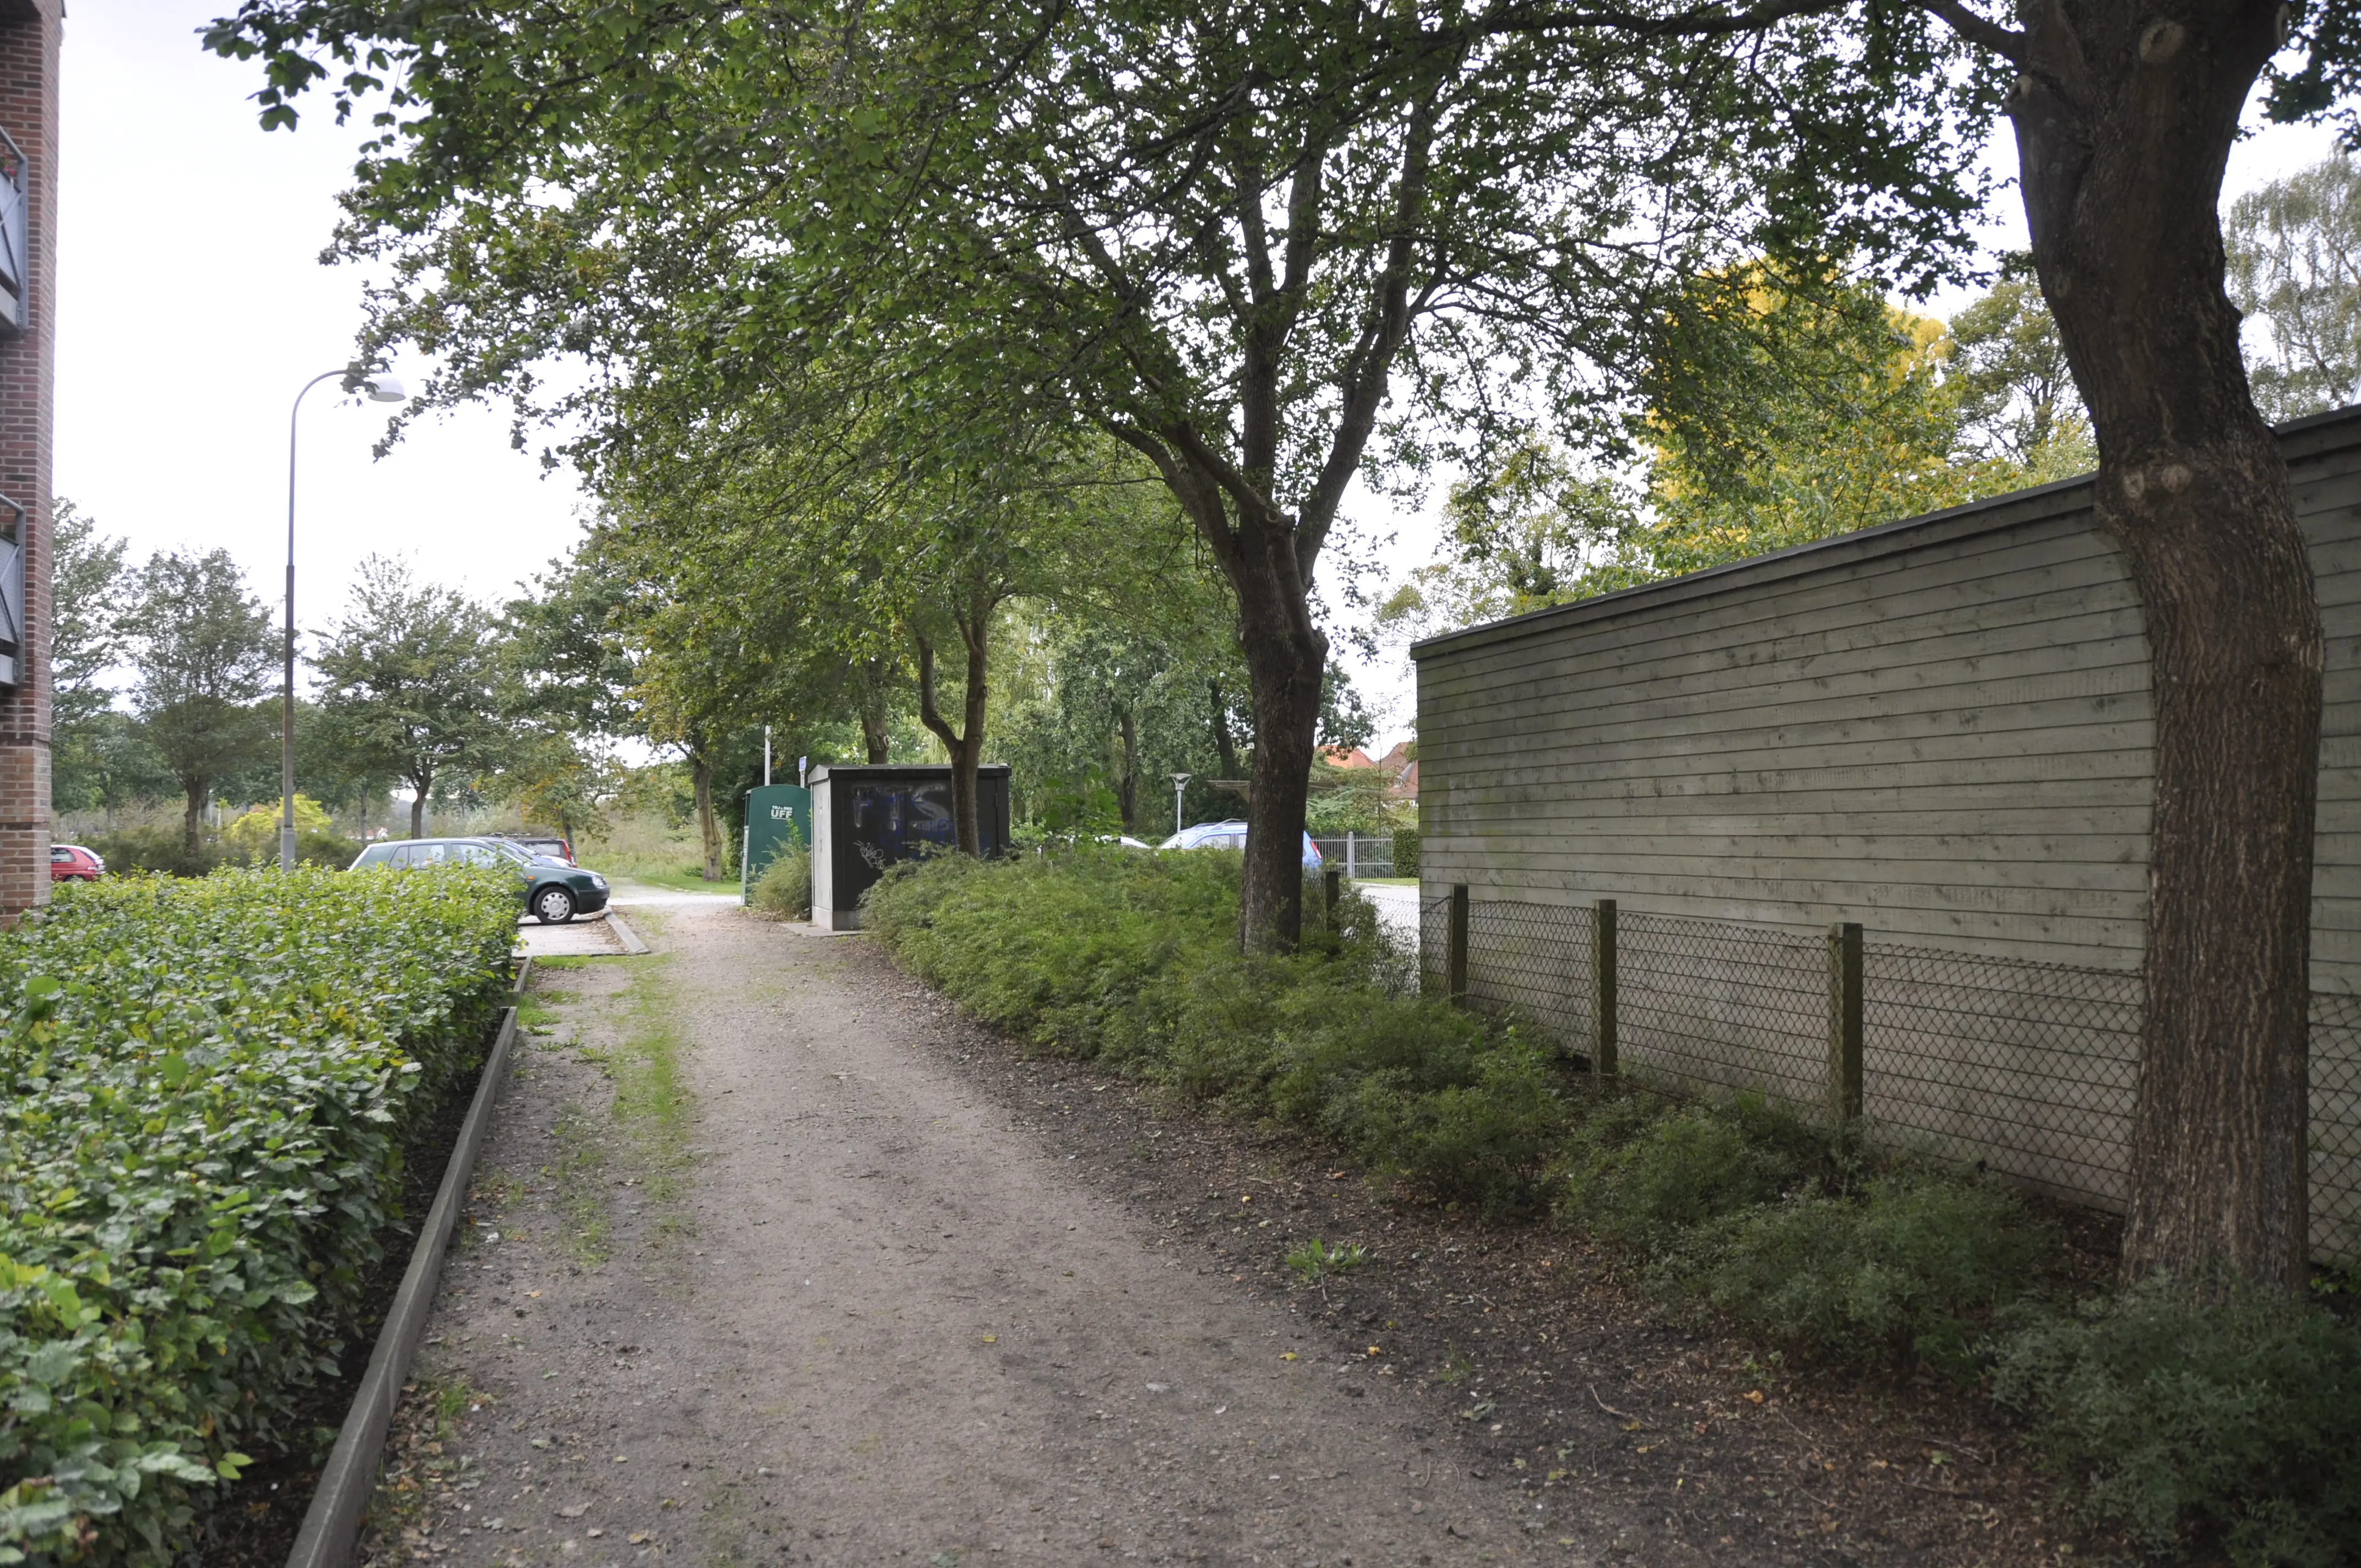 Billede af Aabenraa Sønderport Trinbræt, som lå til højre for træerne i midten af billedet.